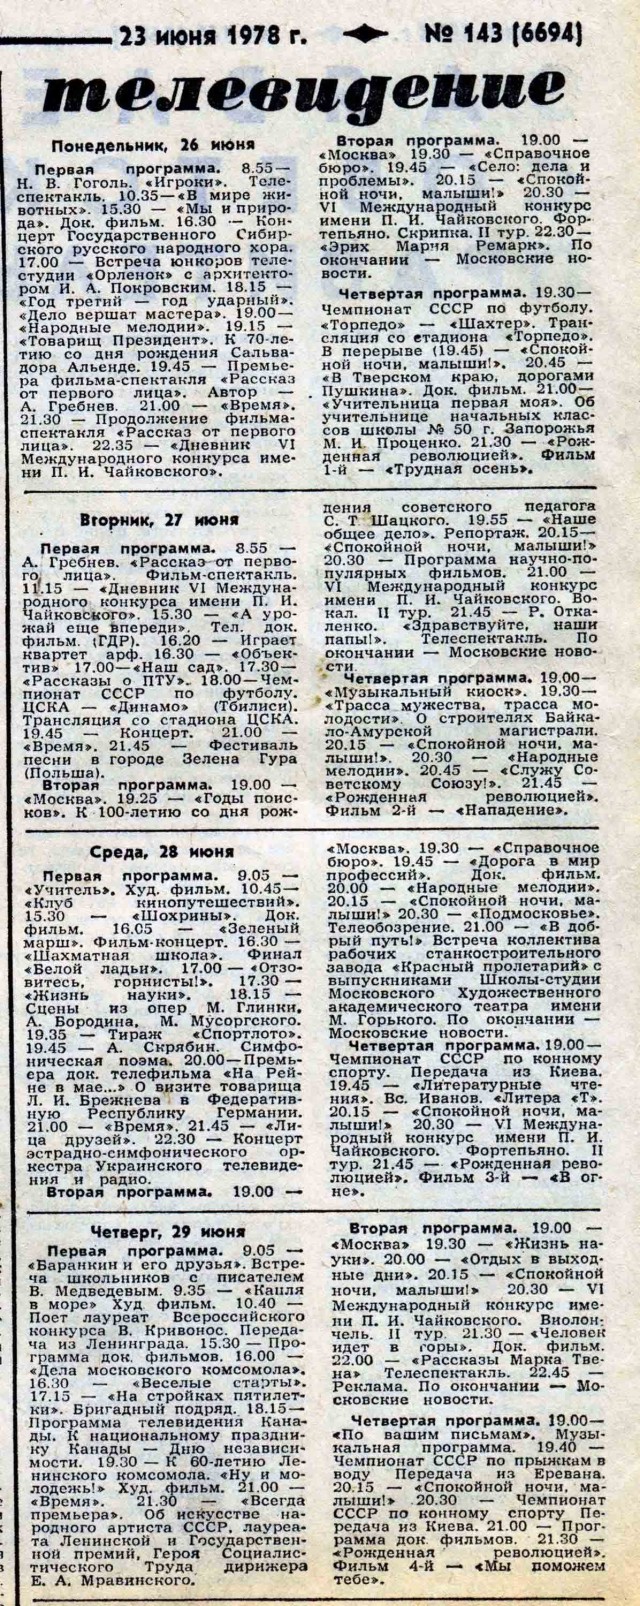 Программа телепередач СССР